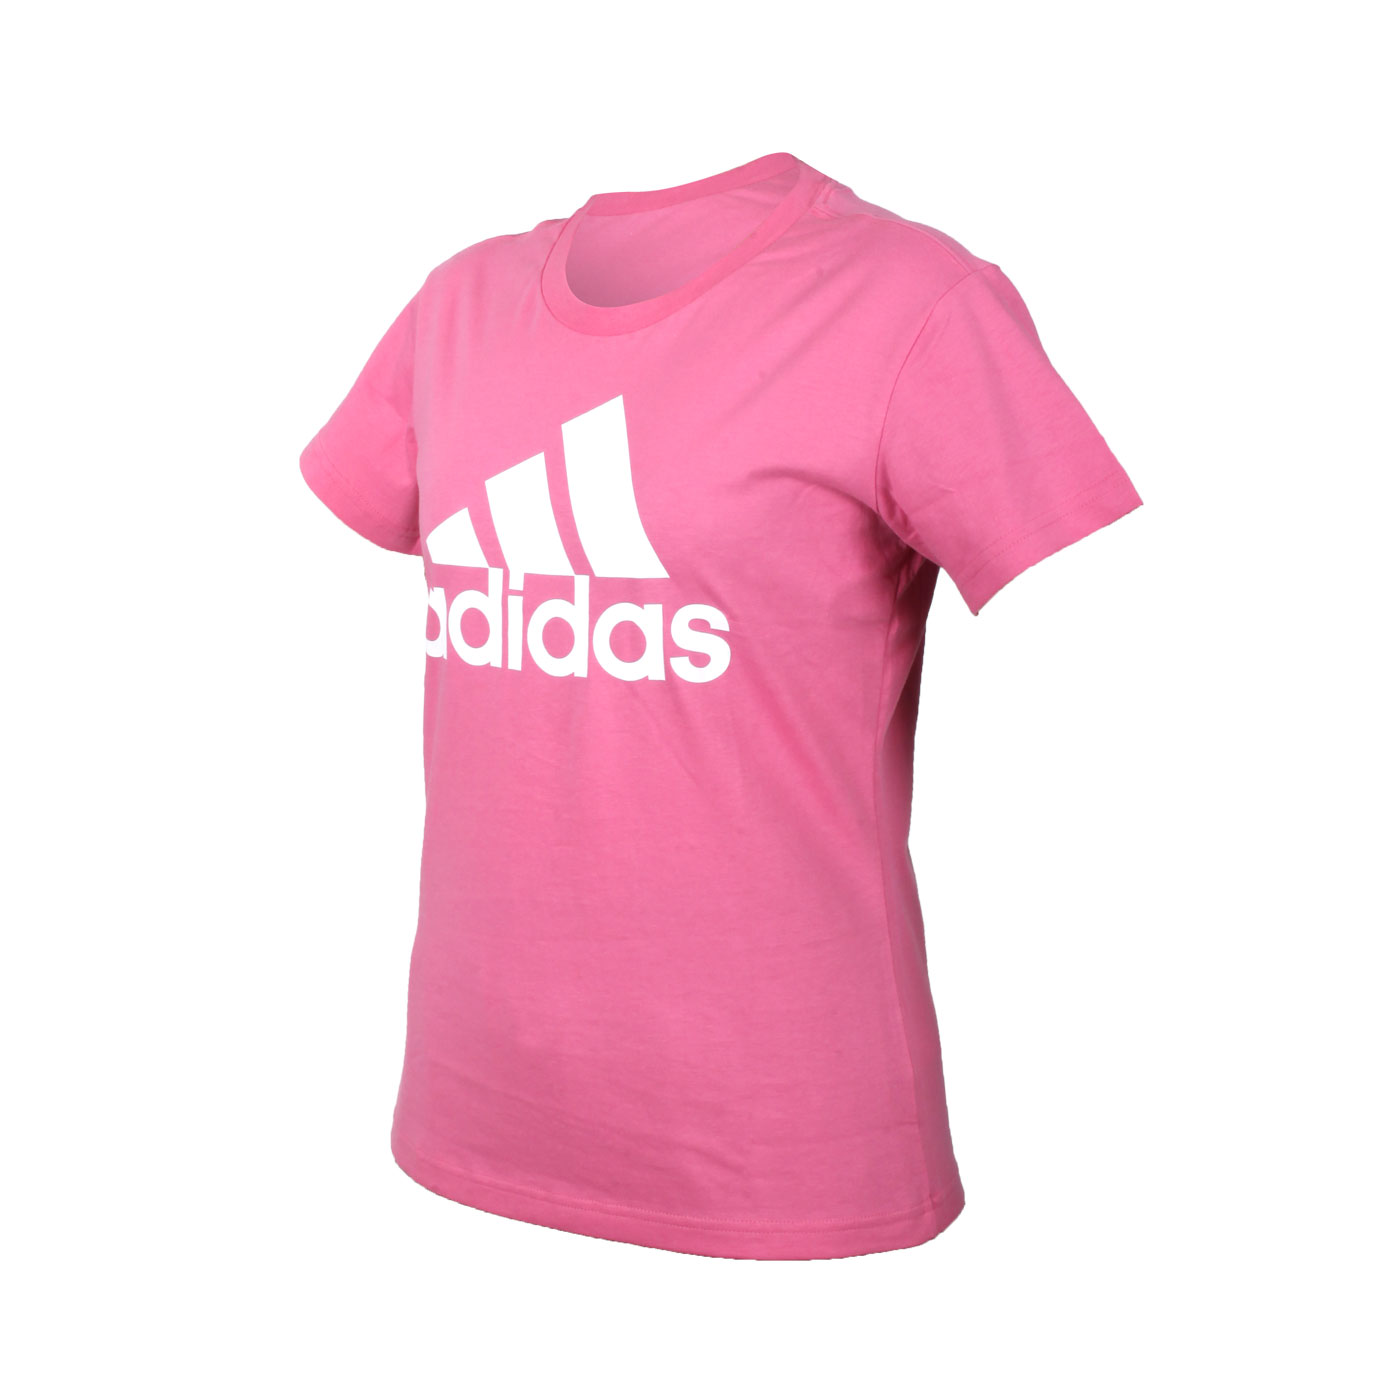 ADIDAS 女款短袖T恤 H07811 - 粉紅白